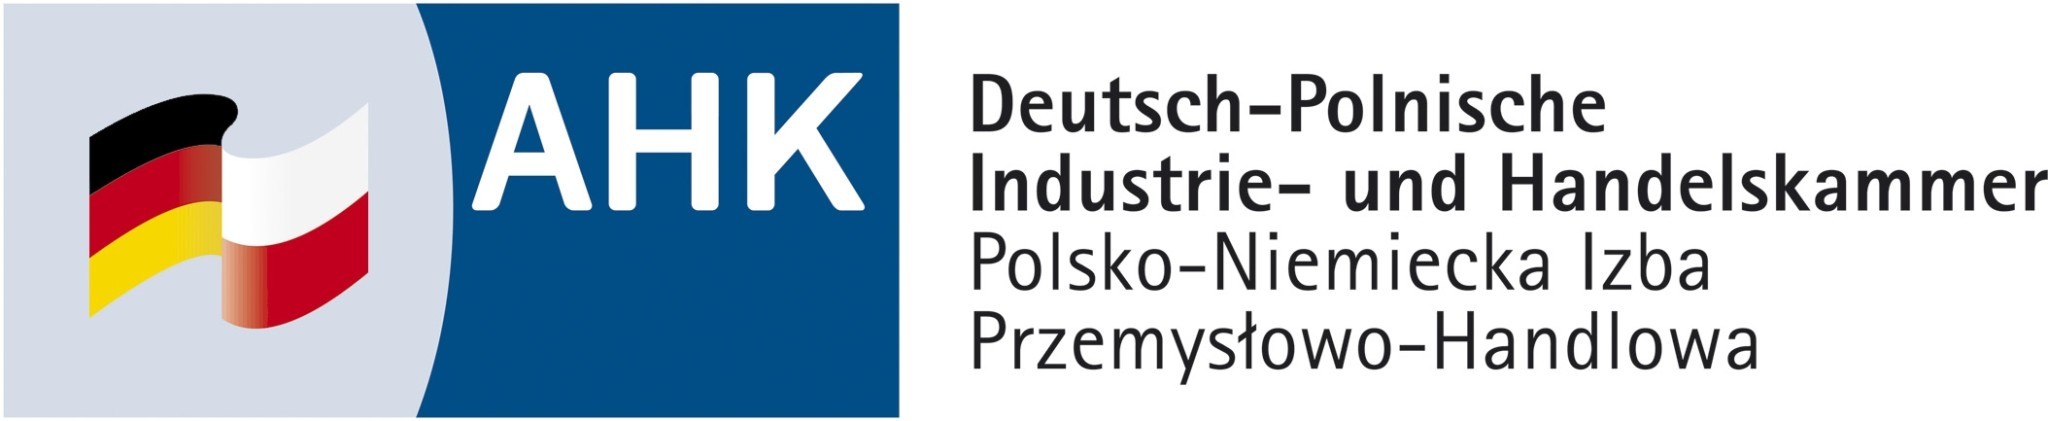 Logo - Polsko-Niemiecka Izba Przemysłowo-Handlowa